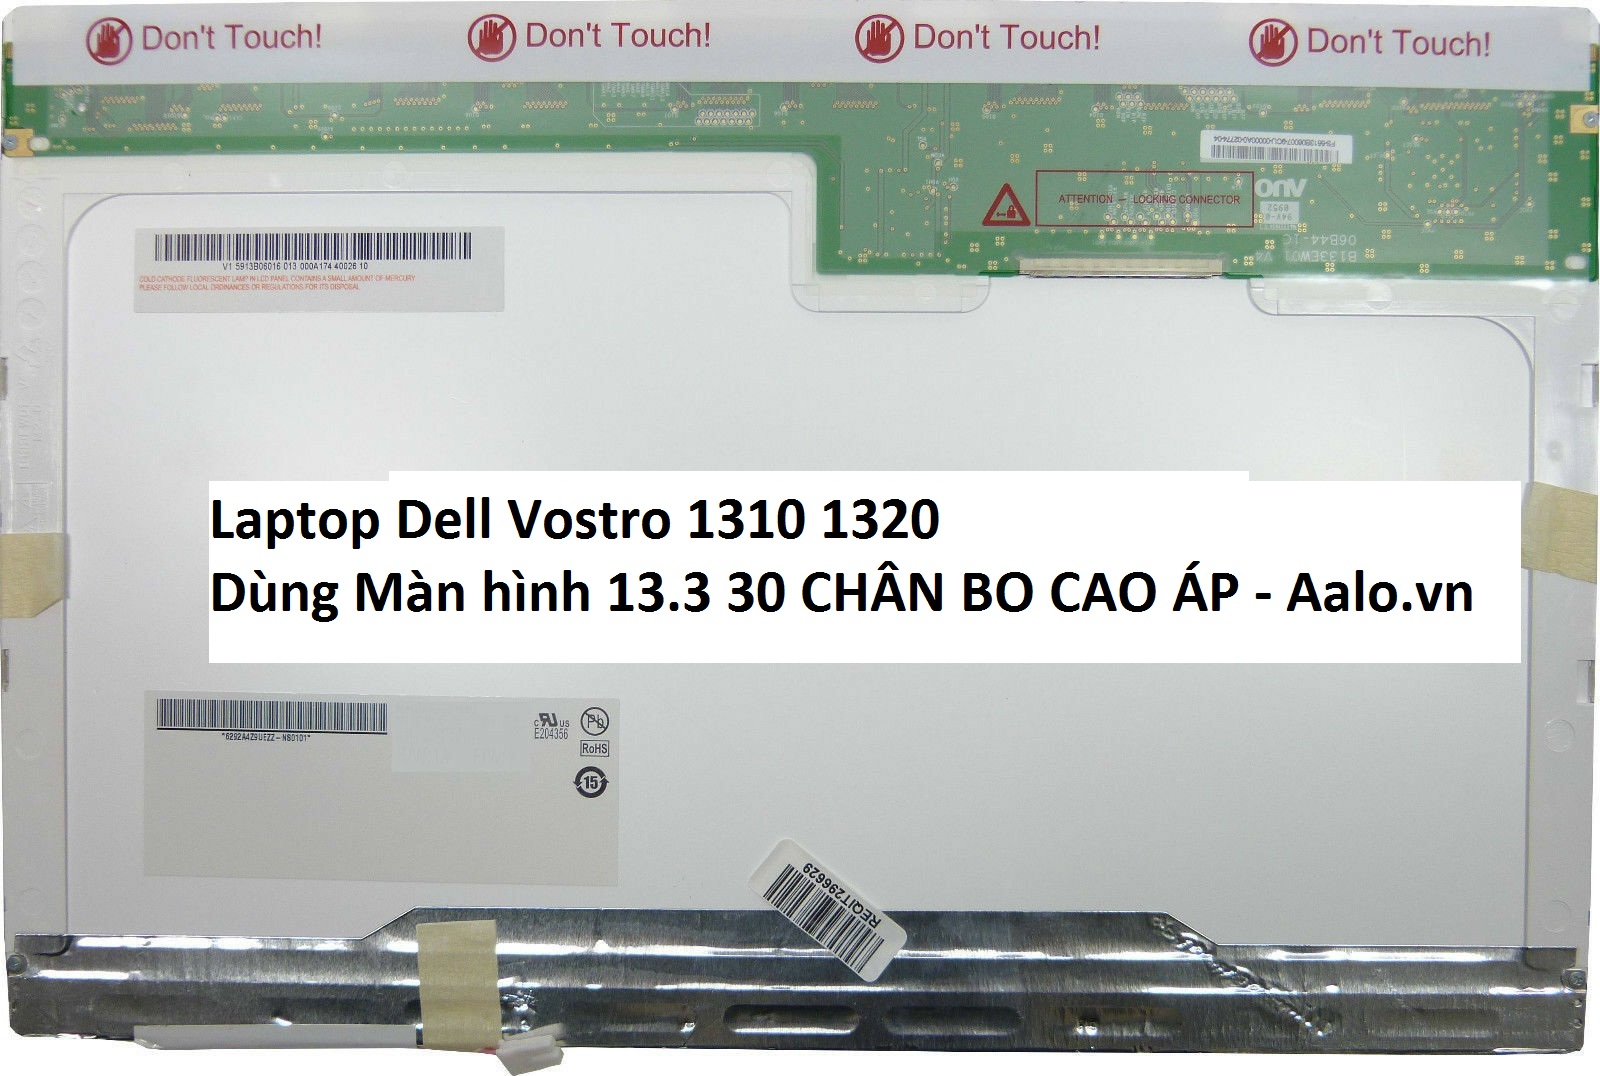 Màn hình Laptop Dell Vostro 1310 1320 - Aalo.vn